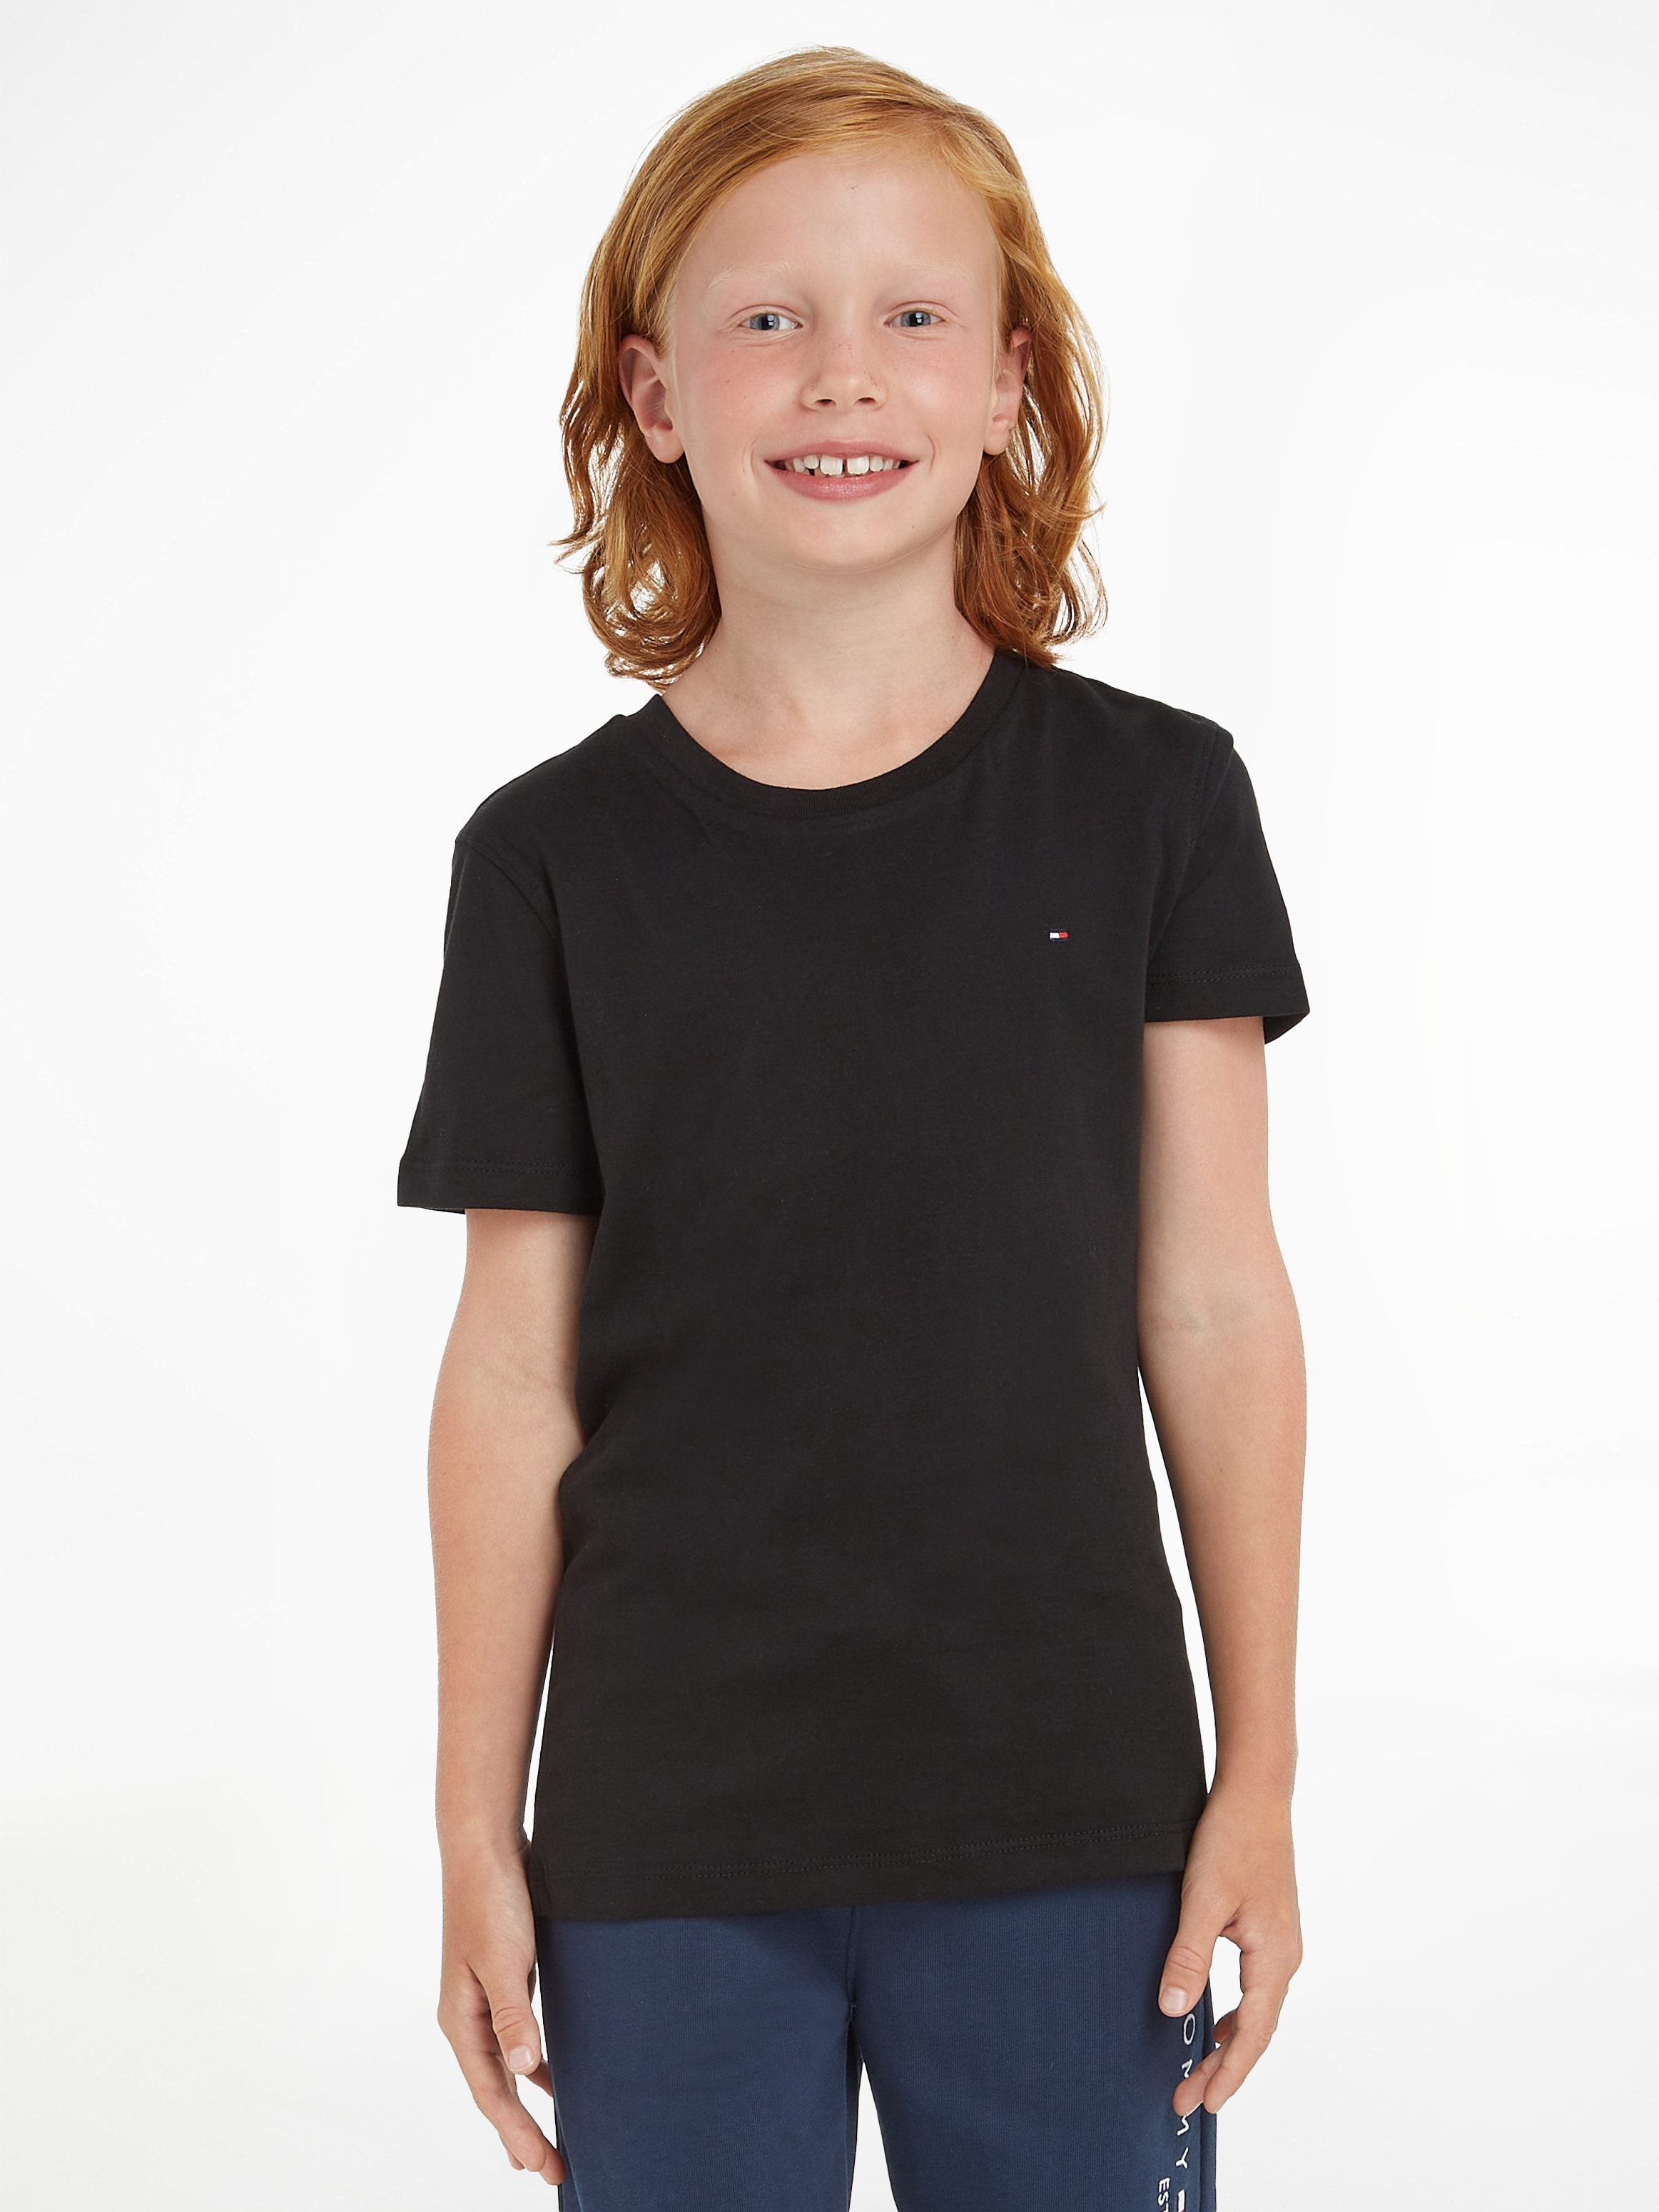 Kids KNIT«, bei »BOYS OTTO Kinder Hilfiger MiniMe,für Jungen T-Shirt kaufen Tommy BASIC CN Junior